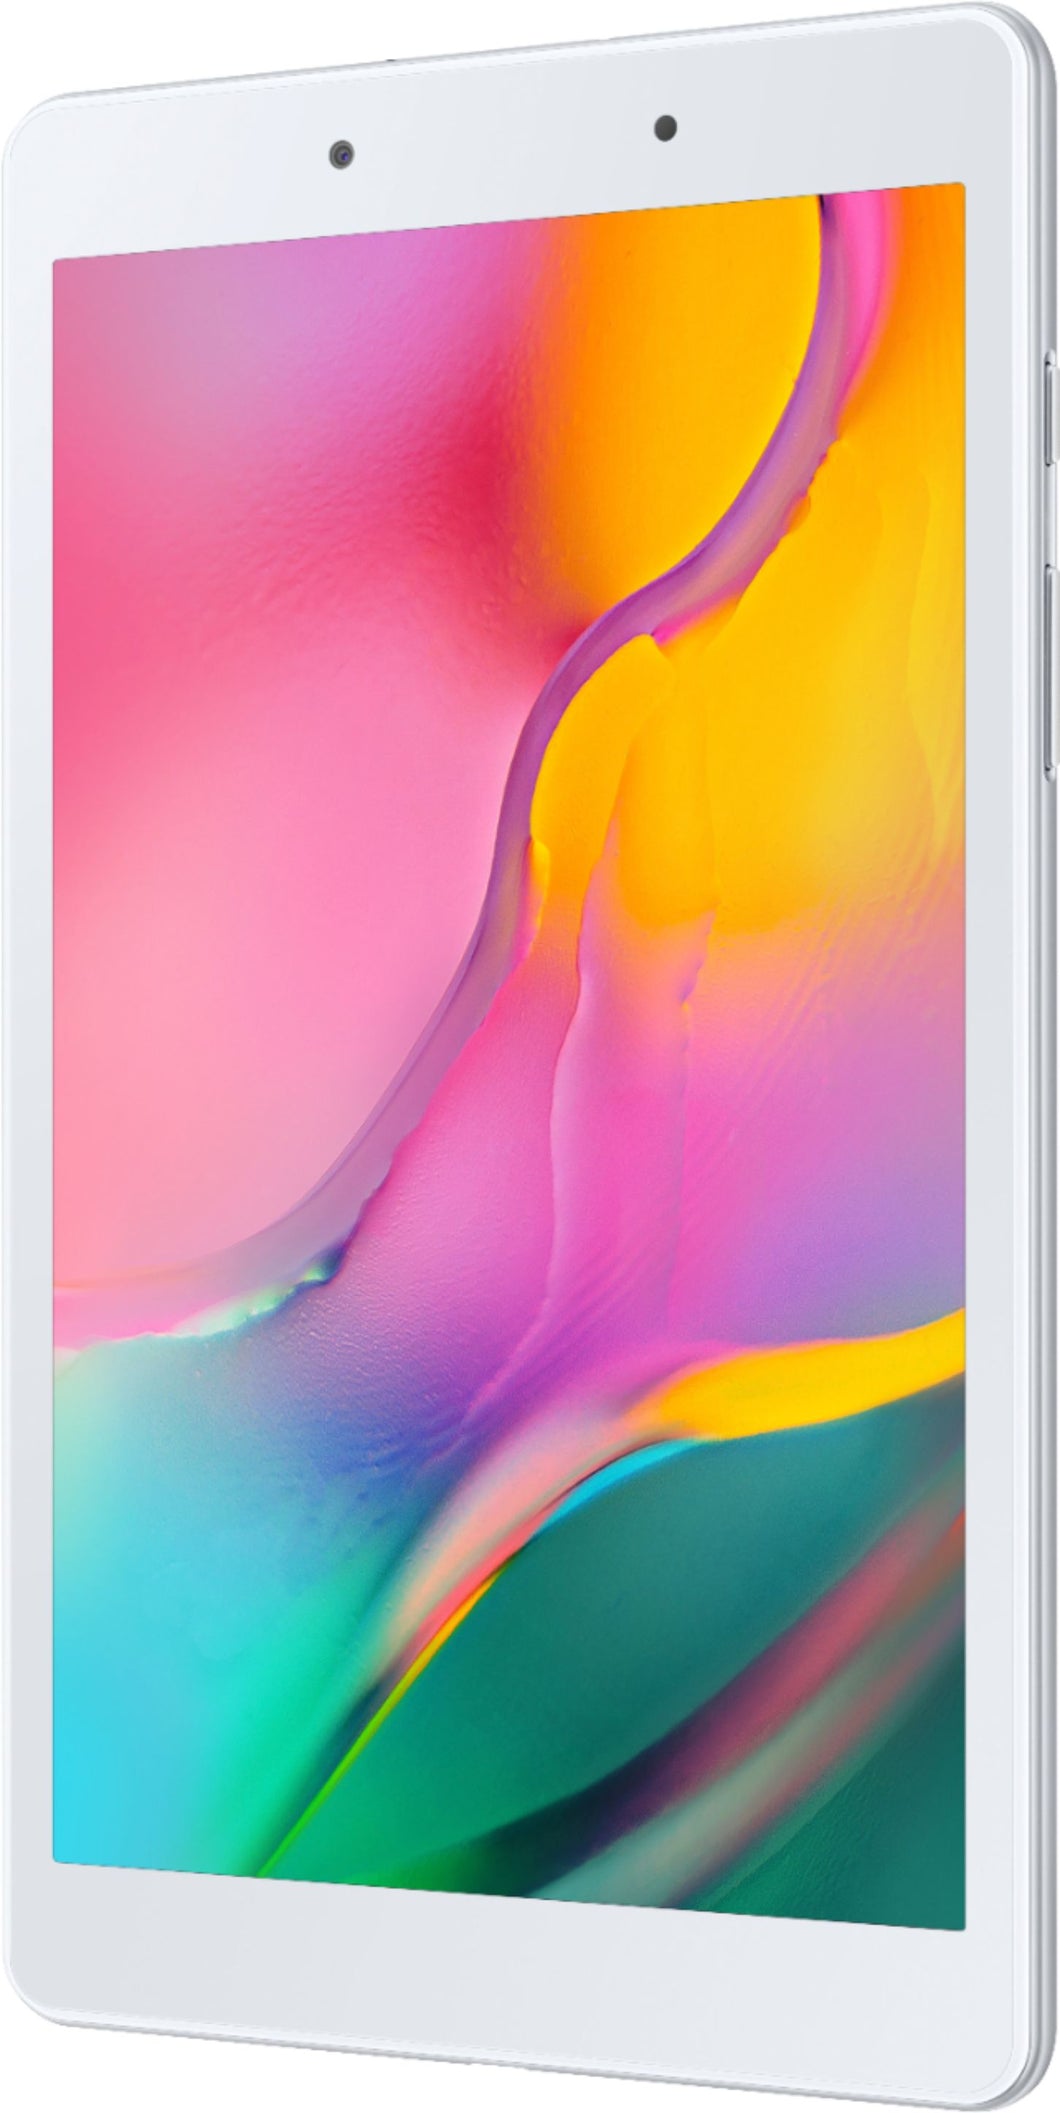 Samsung Galaxy Tab A (2019) SM-T290 32GB Wi-Fi 8in Silver SM-T290NZSCXAR